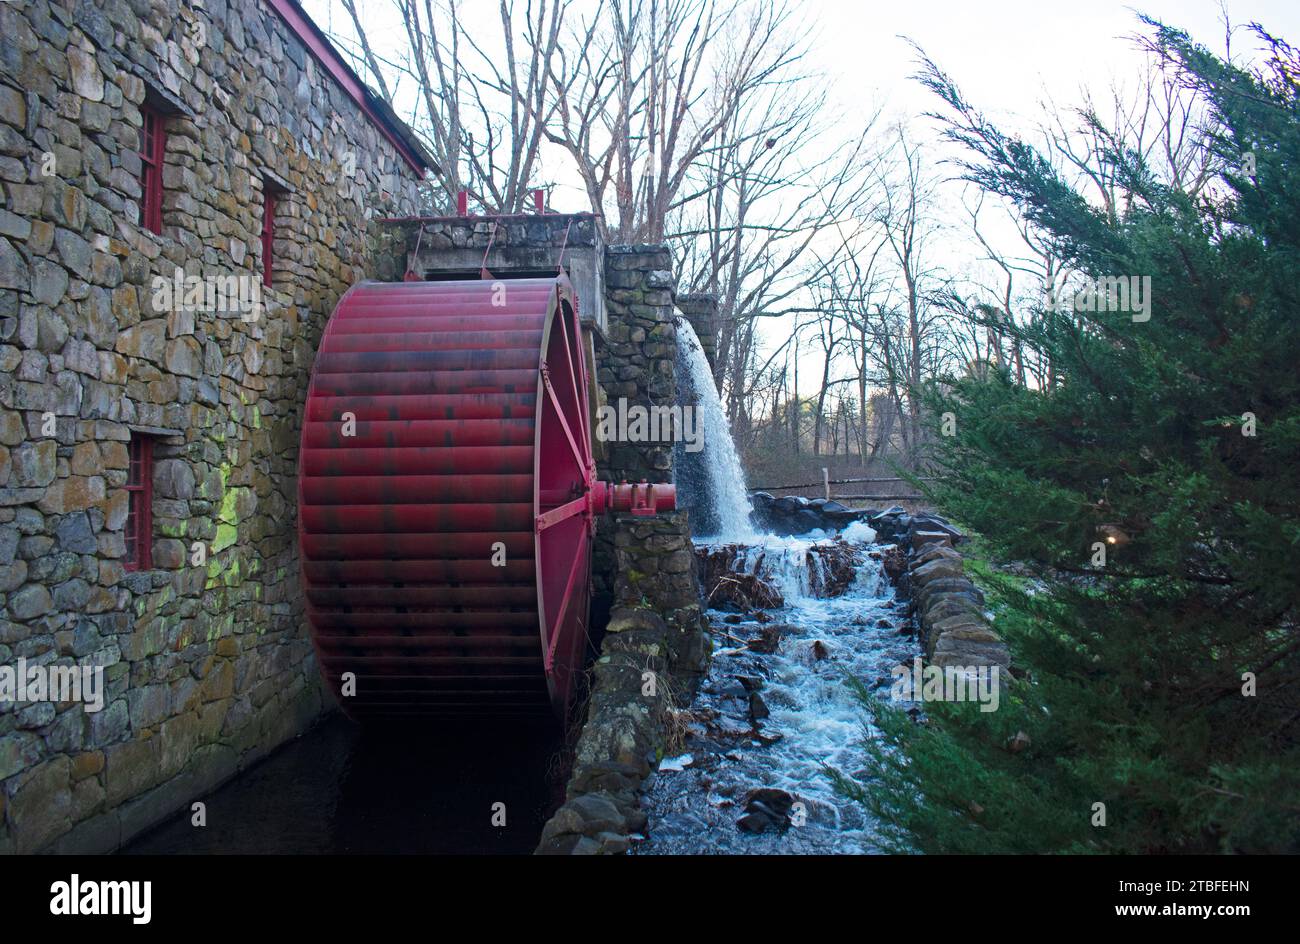 Moulin historique arborant une roue en bois rouge, à Sudbury, Massachusetts, qui est toujours en activité, produisant de la farine de maïs et de la farine de blé -0 Banque D'Images